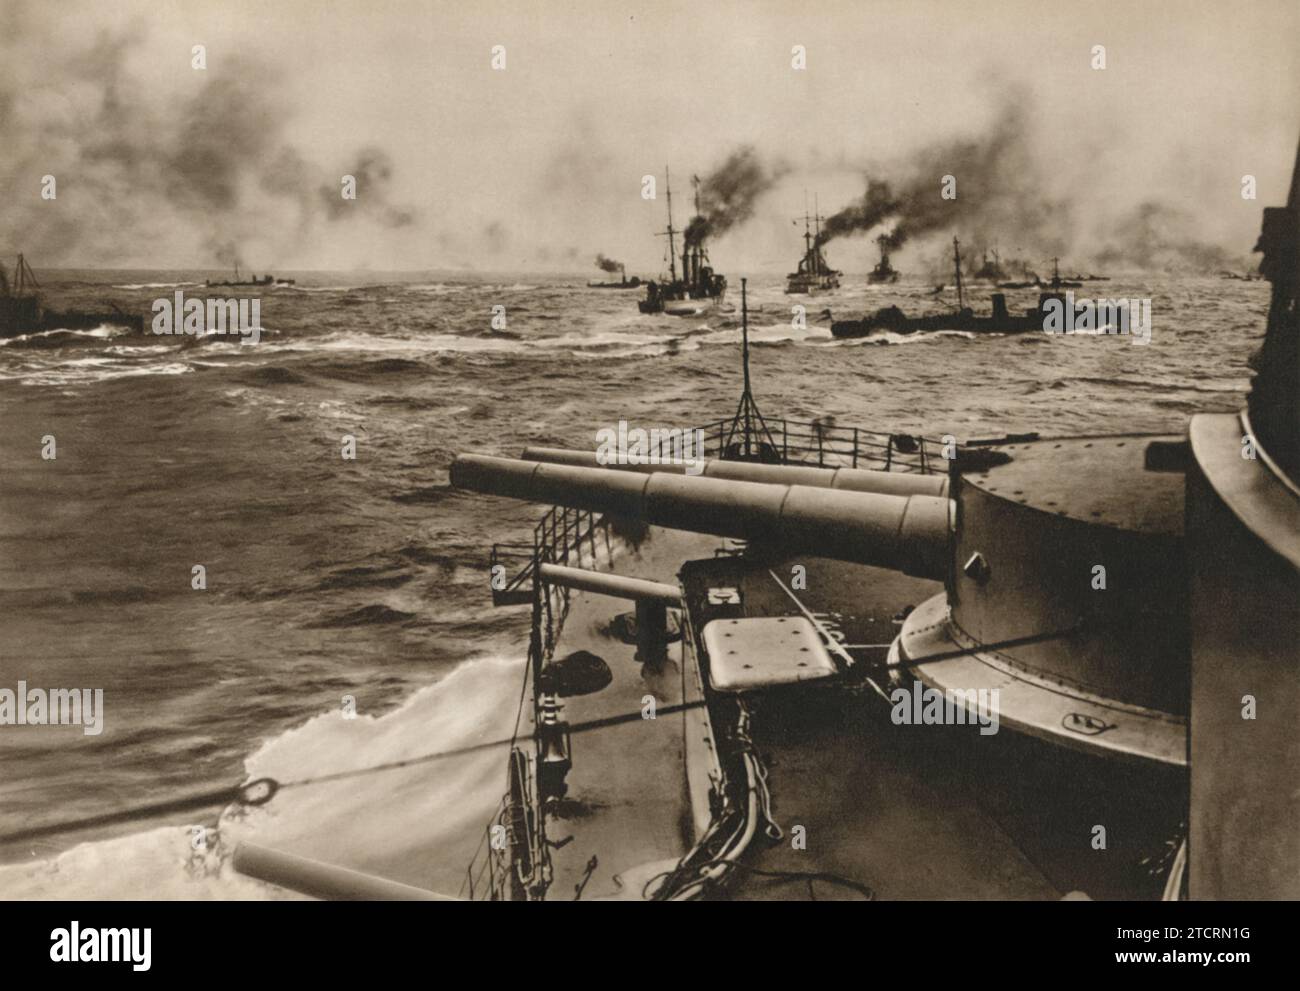 Dans cette image dramatique prise à bord d'un navire de la marine allemande, le Kriegsmarine, plusieurs navires sont vus avec de la fumée coulant et coulant. La scène est capturée sous la légende « des torpilles traversent pour l'attaque », témoignant de l'intensité et de la férocité de la guerre navale. Ce moment représente probablement une bataille où les torpilleurs allemands, connus pour leur vitesse et leur agilité, s'engagent dans une manœuvre offensive. Banque D'Images